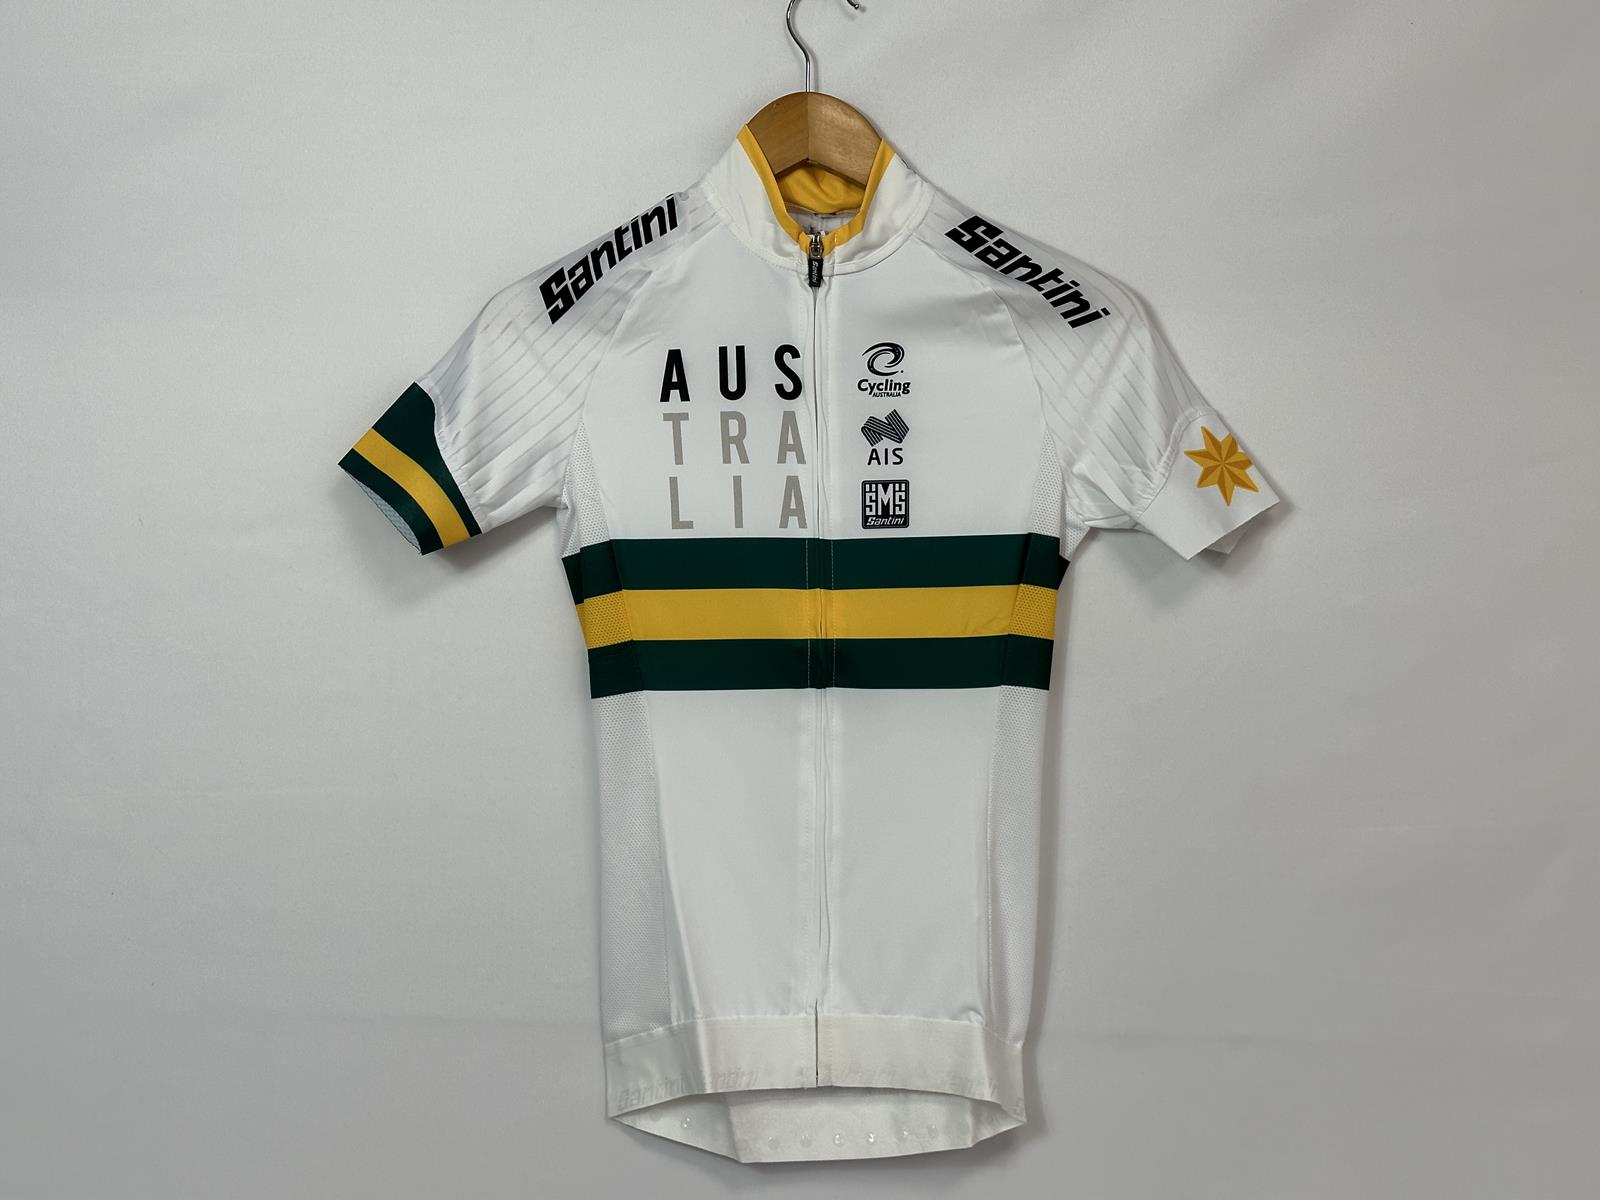 Maillot Sleek Plus Aero de l'équipe cycliste australienne